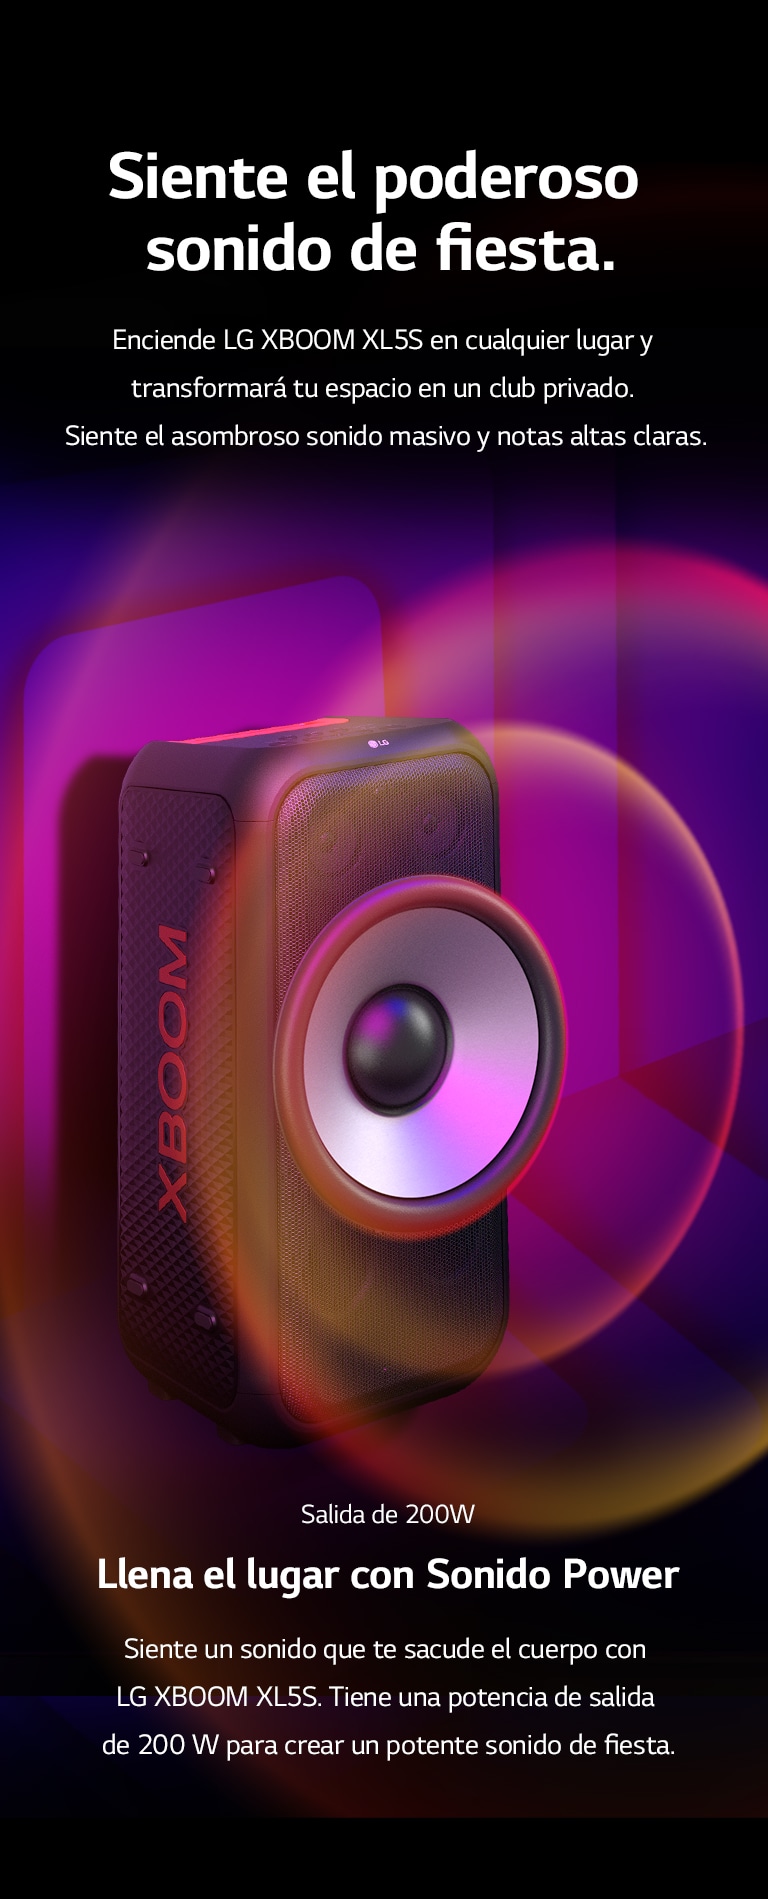 LG XBOOM XL5S se coloca en el espacio infinito. En la pared, se ilustran gráficos de sonido cuadrados. En el centro del altavoz se amplía un woofer gigante de 6,5 pulgadas para enfatizar su sonido de 200W. Las ondas de sonido salen del woofer.